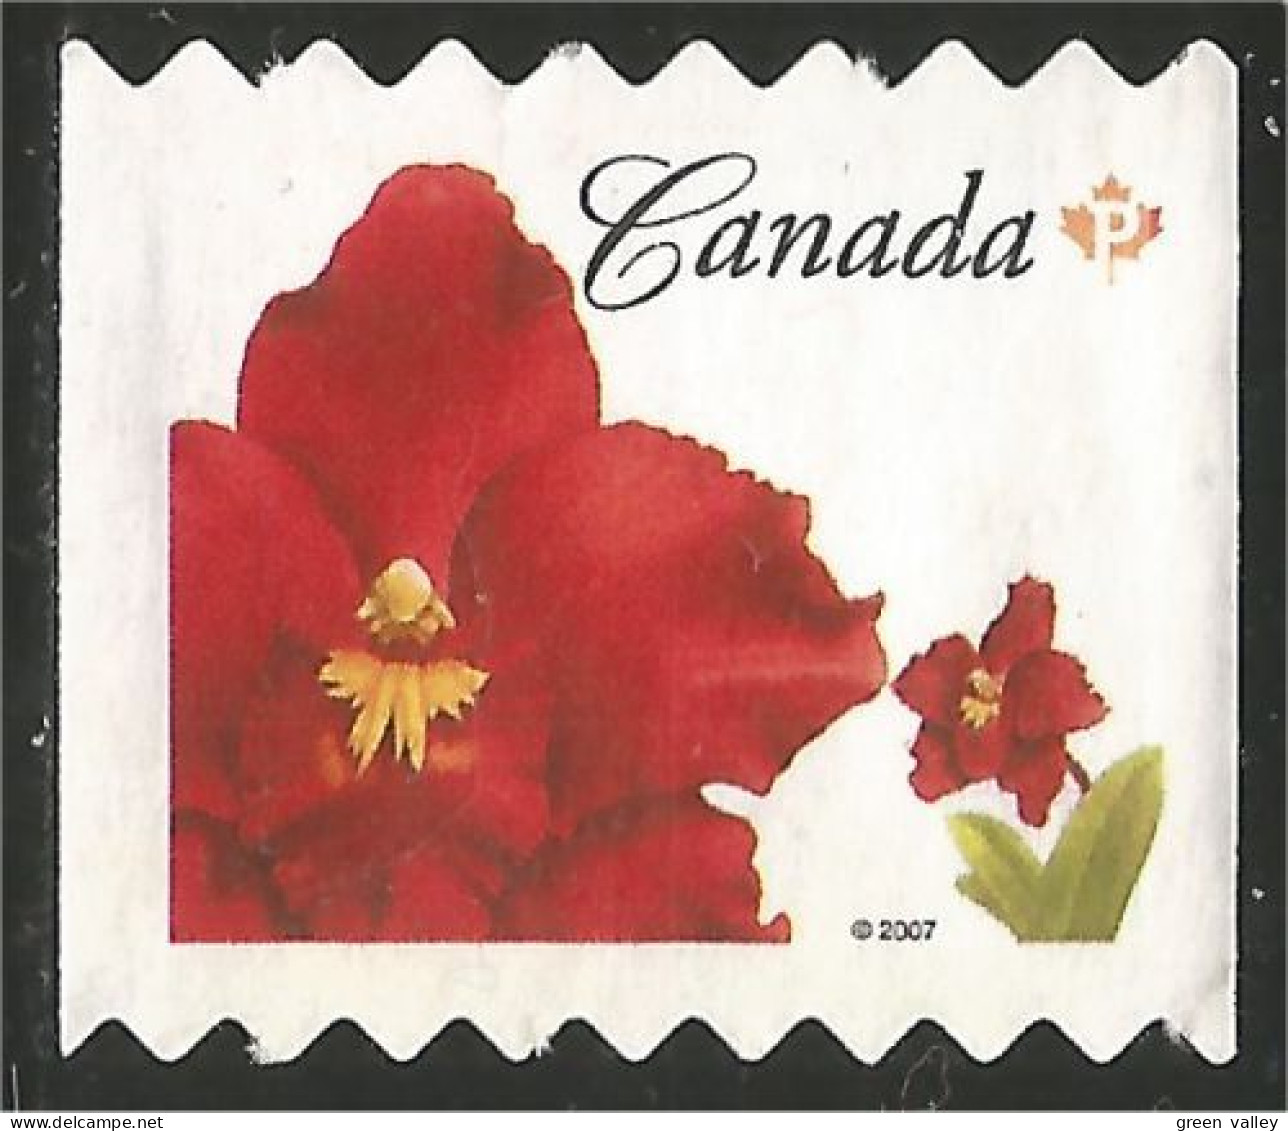 Canada Island Red Rouge Mint No Gum (17) - Usados